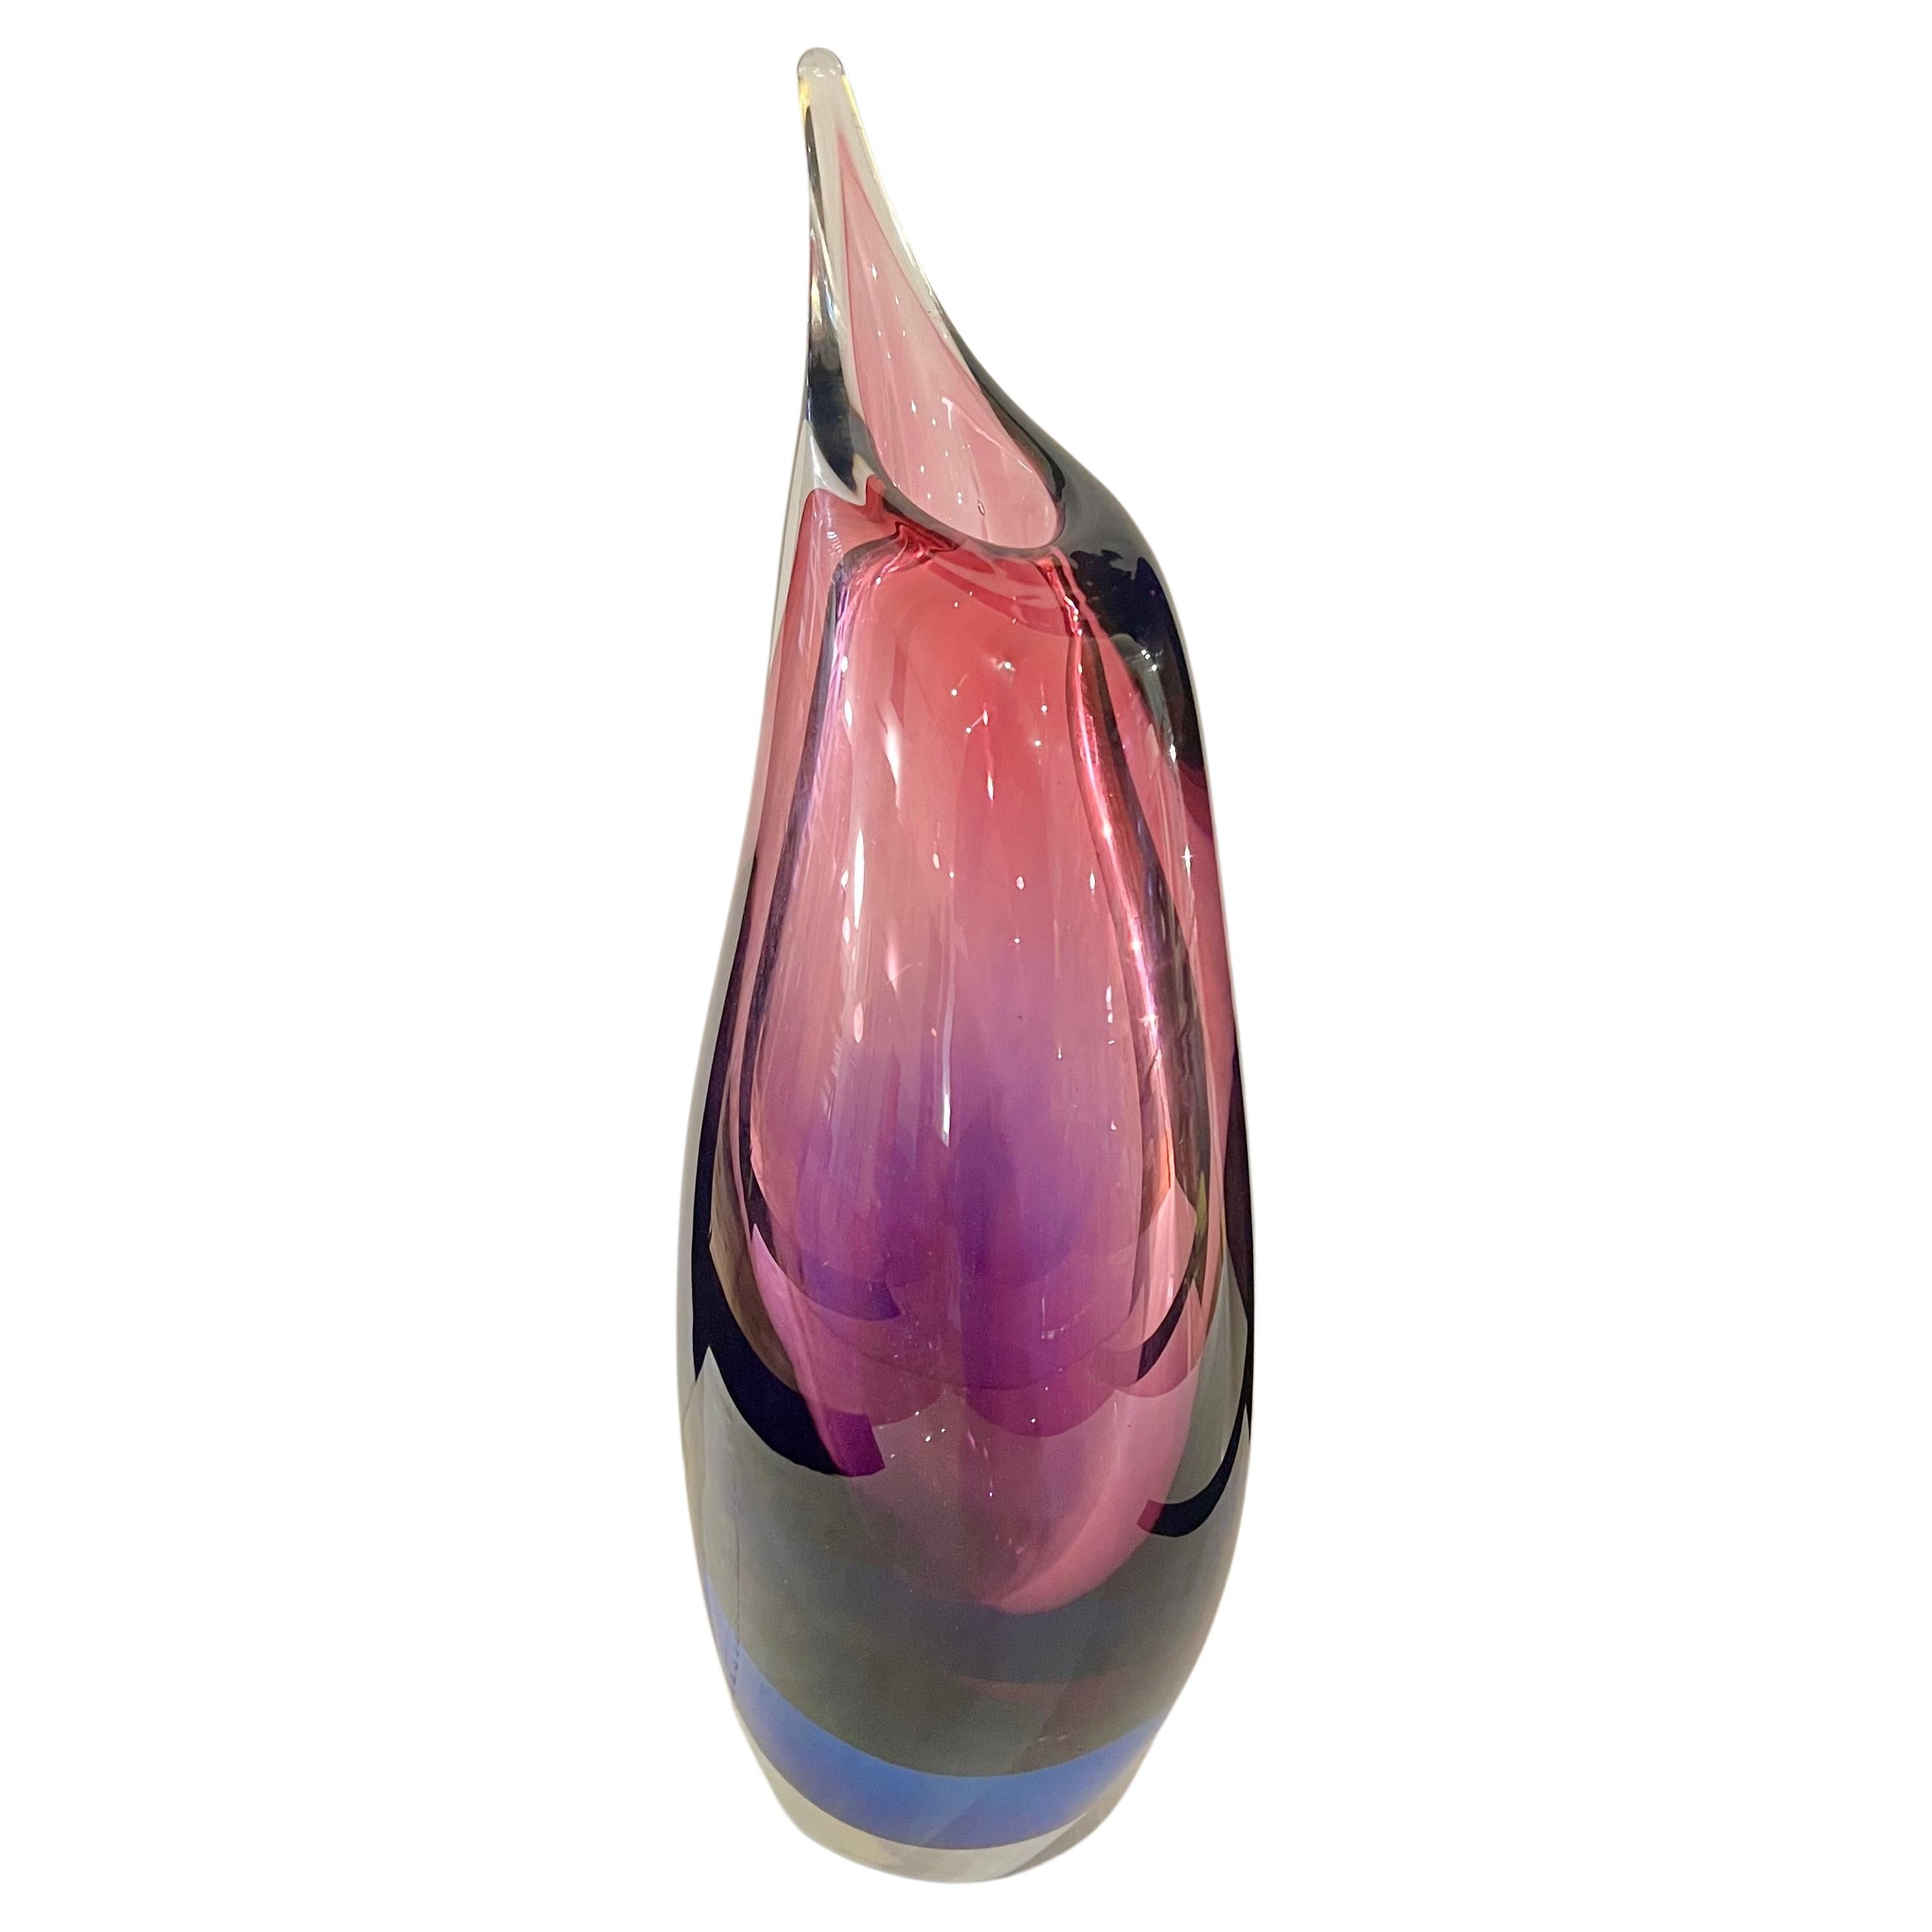 Majestic Grand vase en verre soufflé , en forme de goutte d'eau circa 1970 excellent état pas d'éclats ou de rayures belles couleurs , grand Murano Italie Modern-Decor.